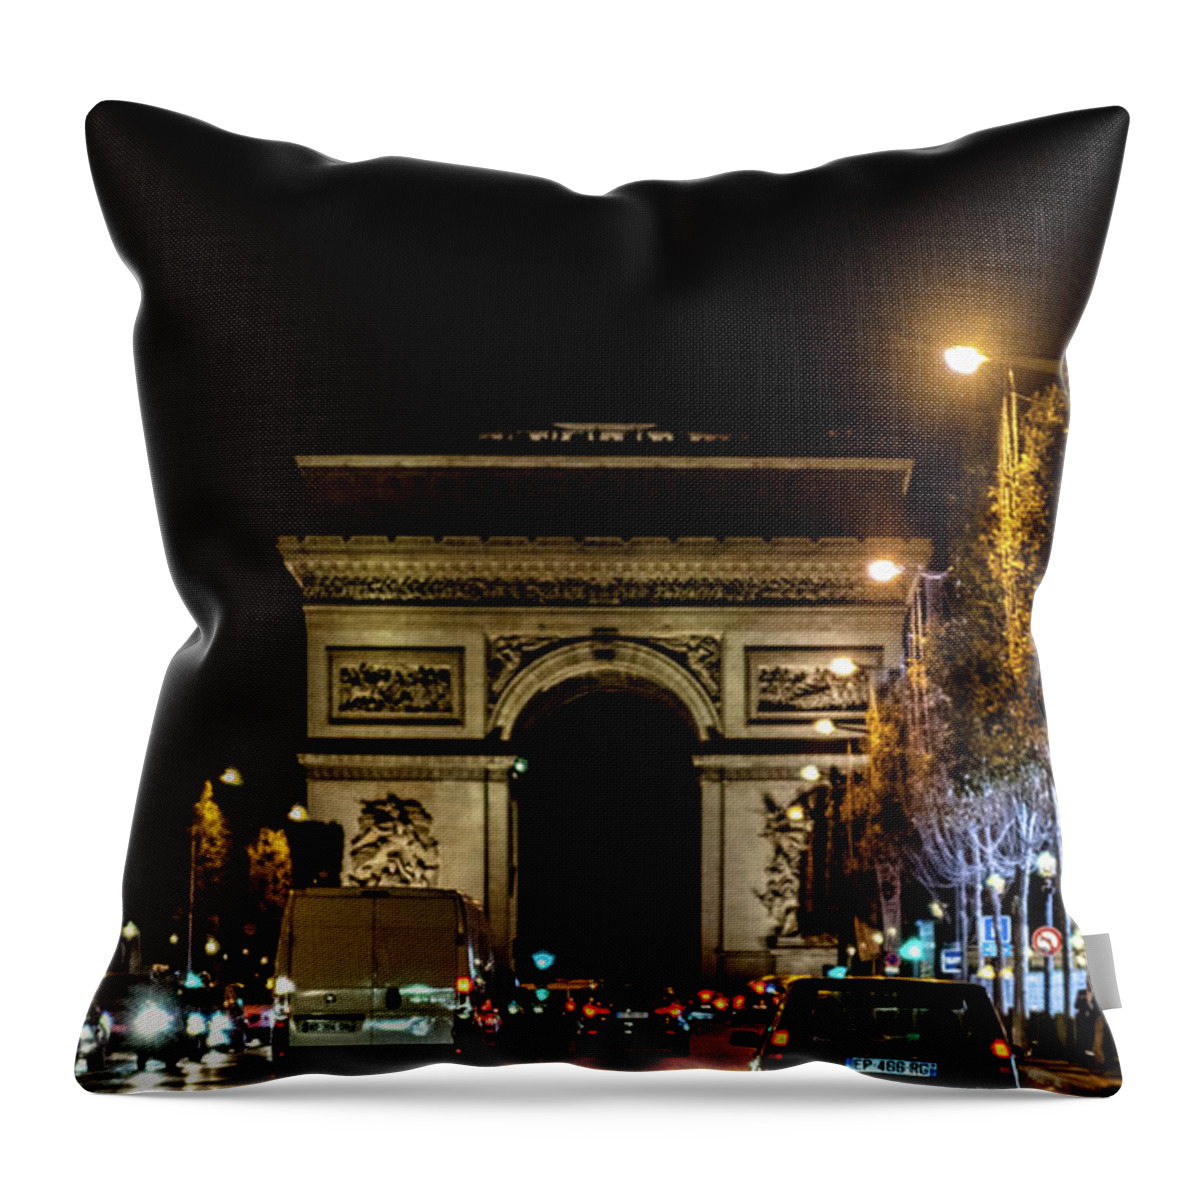 2018 Throw Pillow featuring the photograph Arc de Triomphe by Randy Scherkenbach